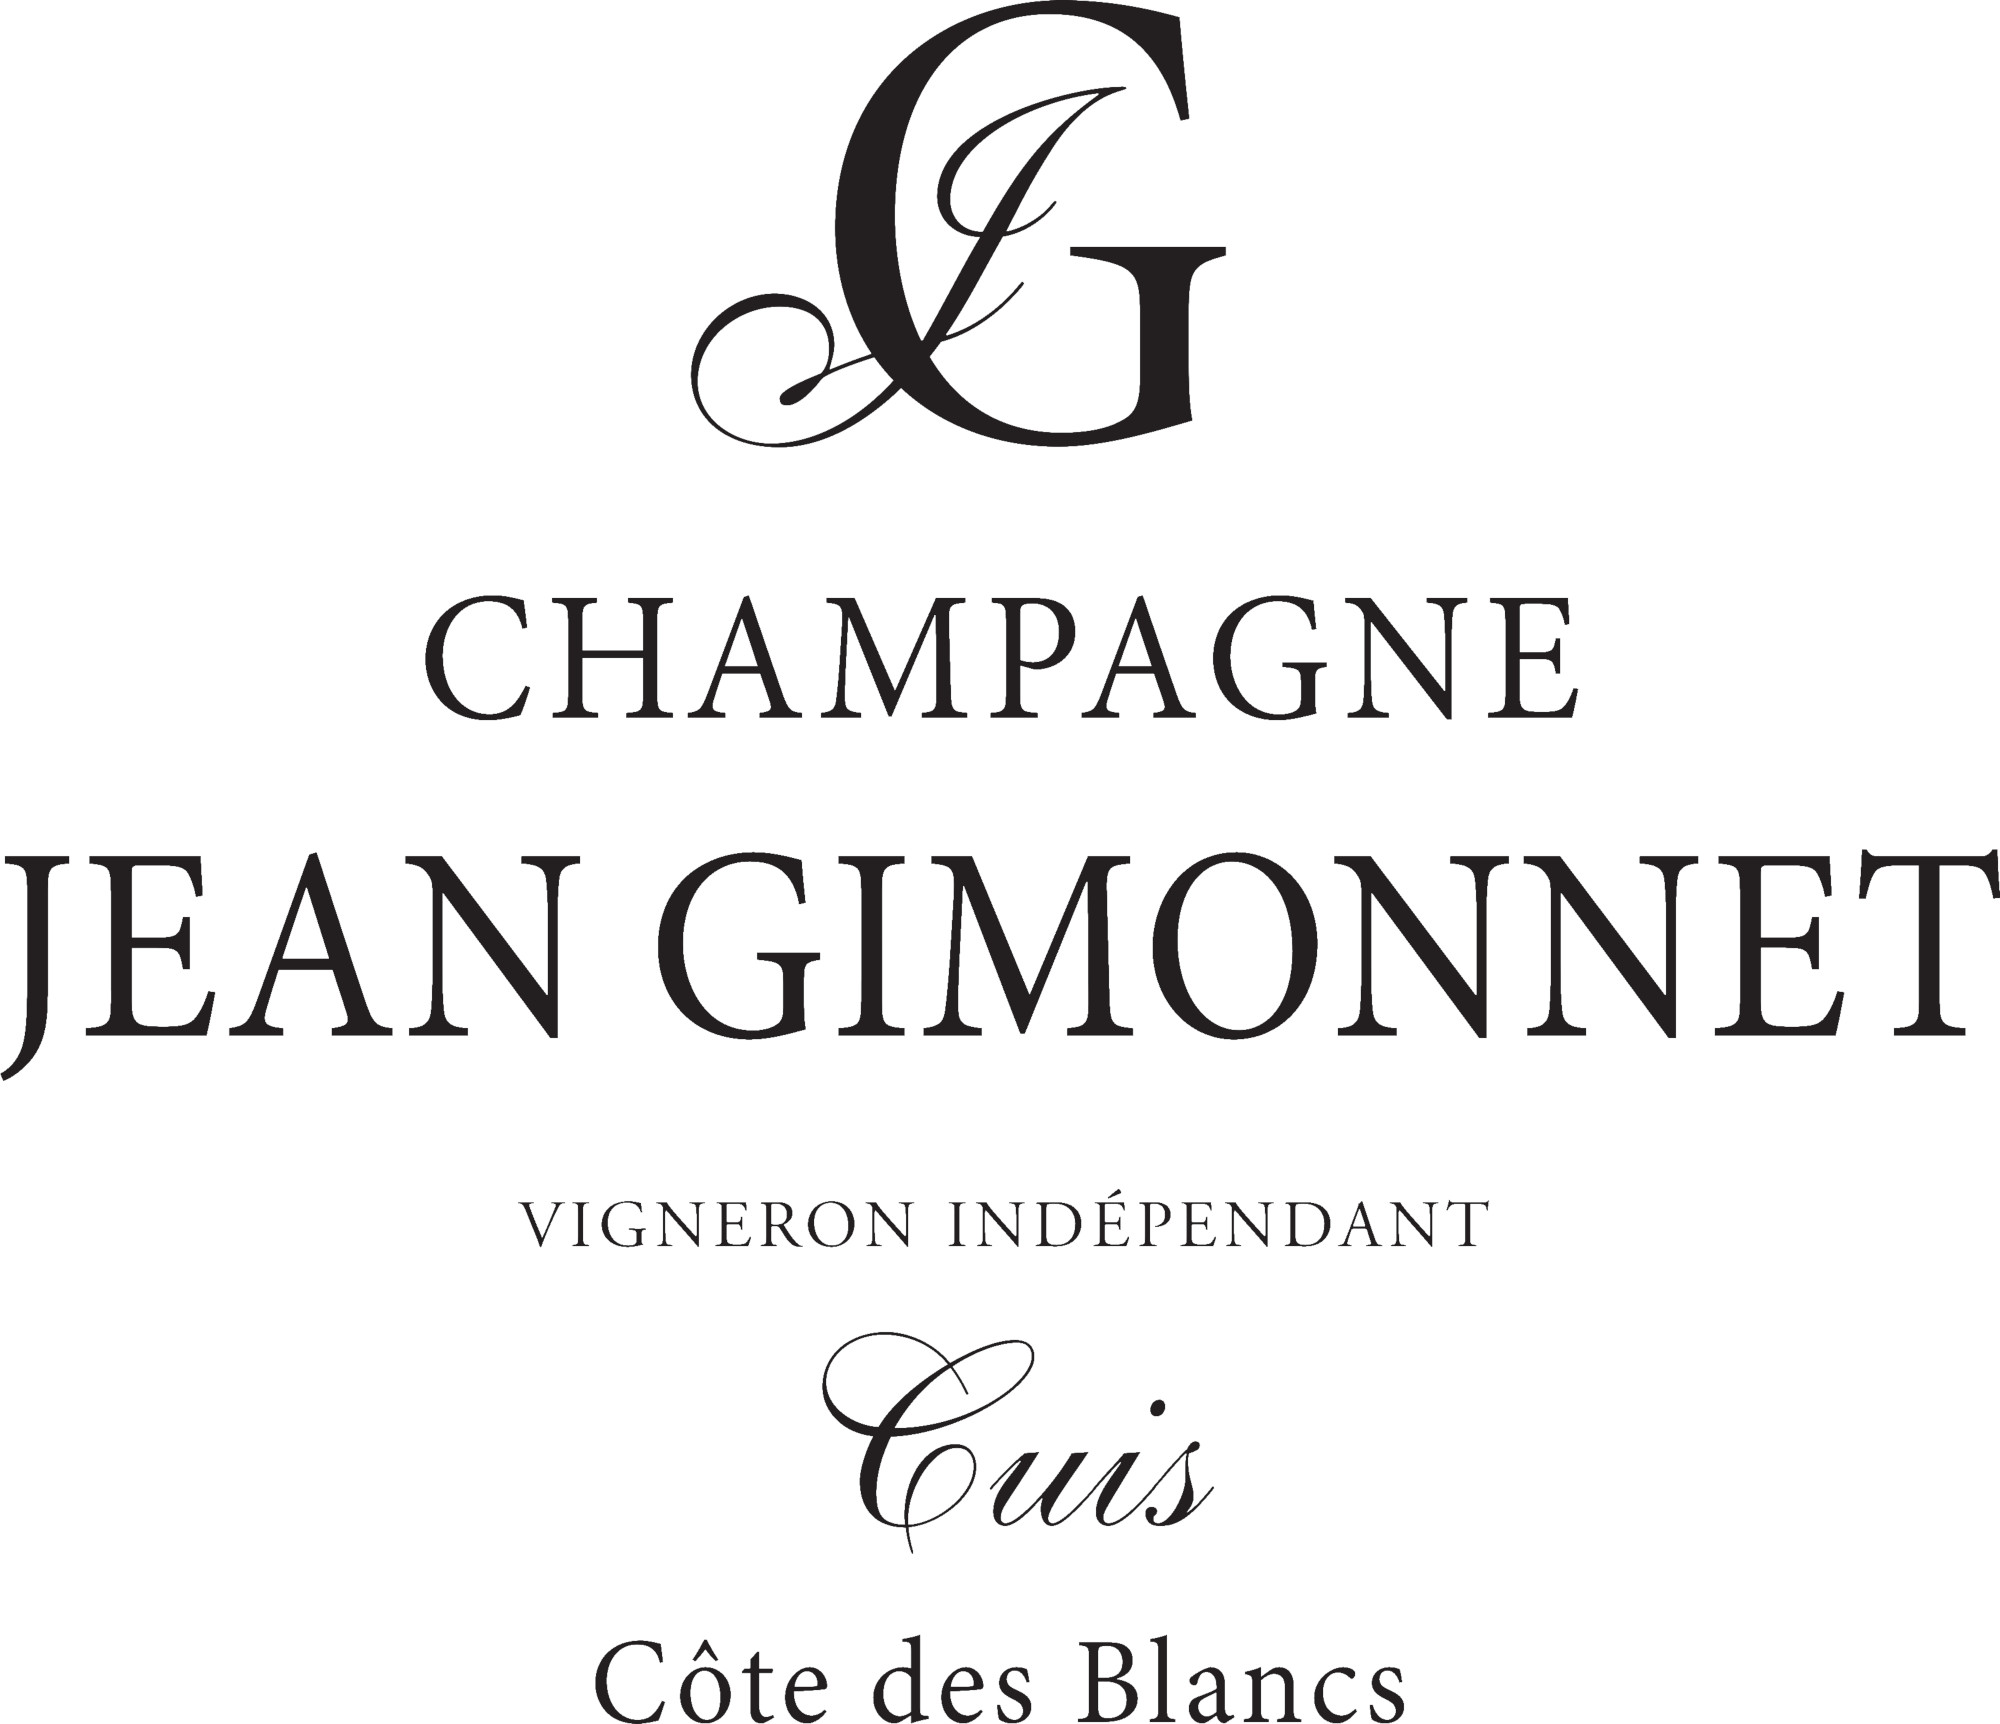 Champagne Jean Gimonnet